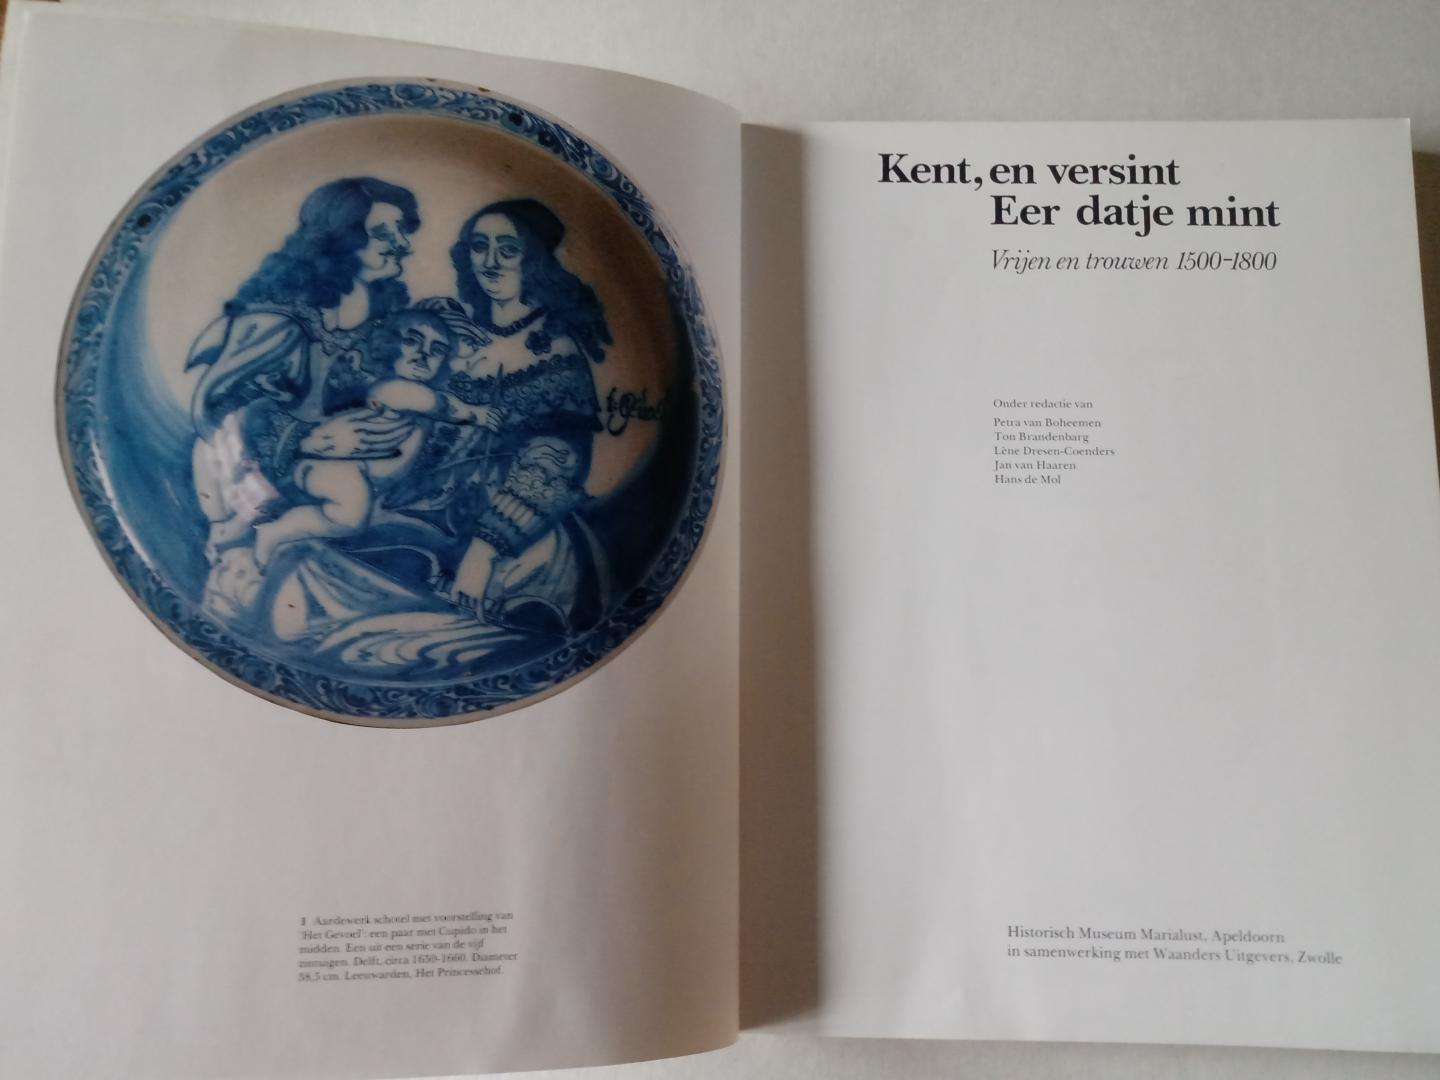 Boheemen, Petra van - Kent, en versint, Eer datje mint / Vrijen en trouwen 1500-1800